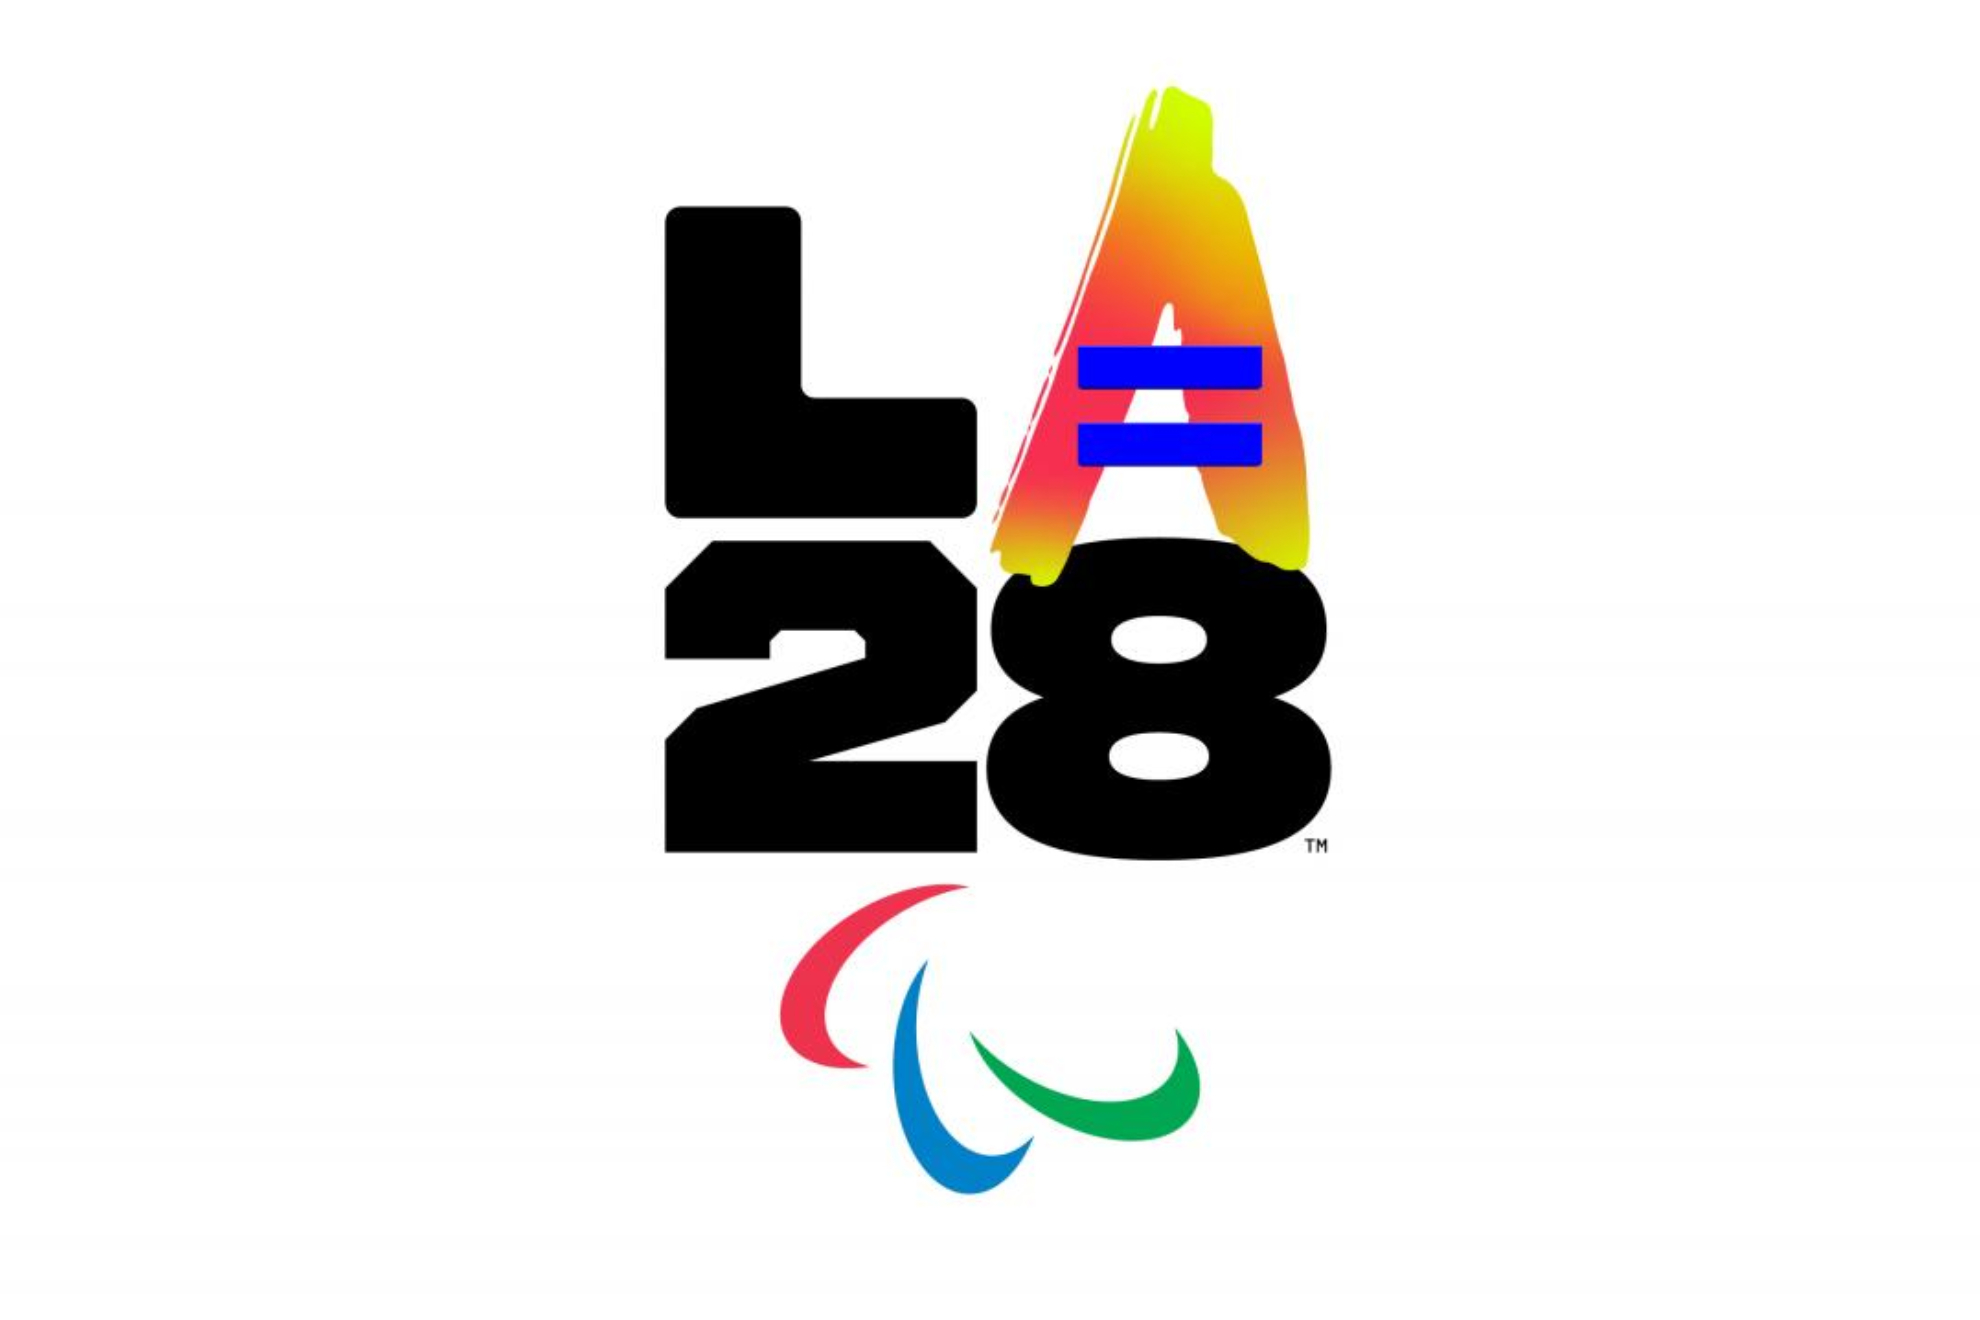 El logo de Los Angeles 2028.